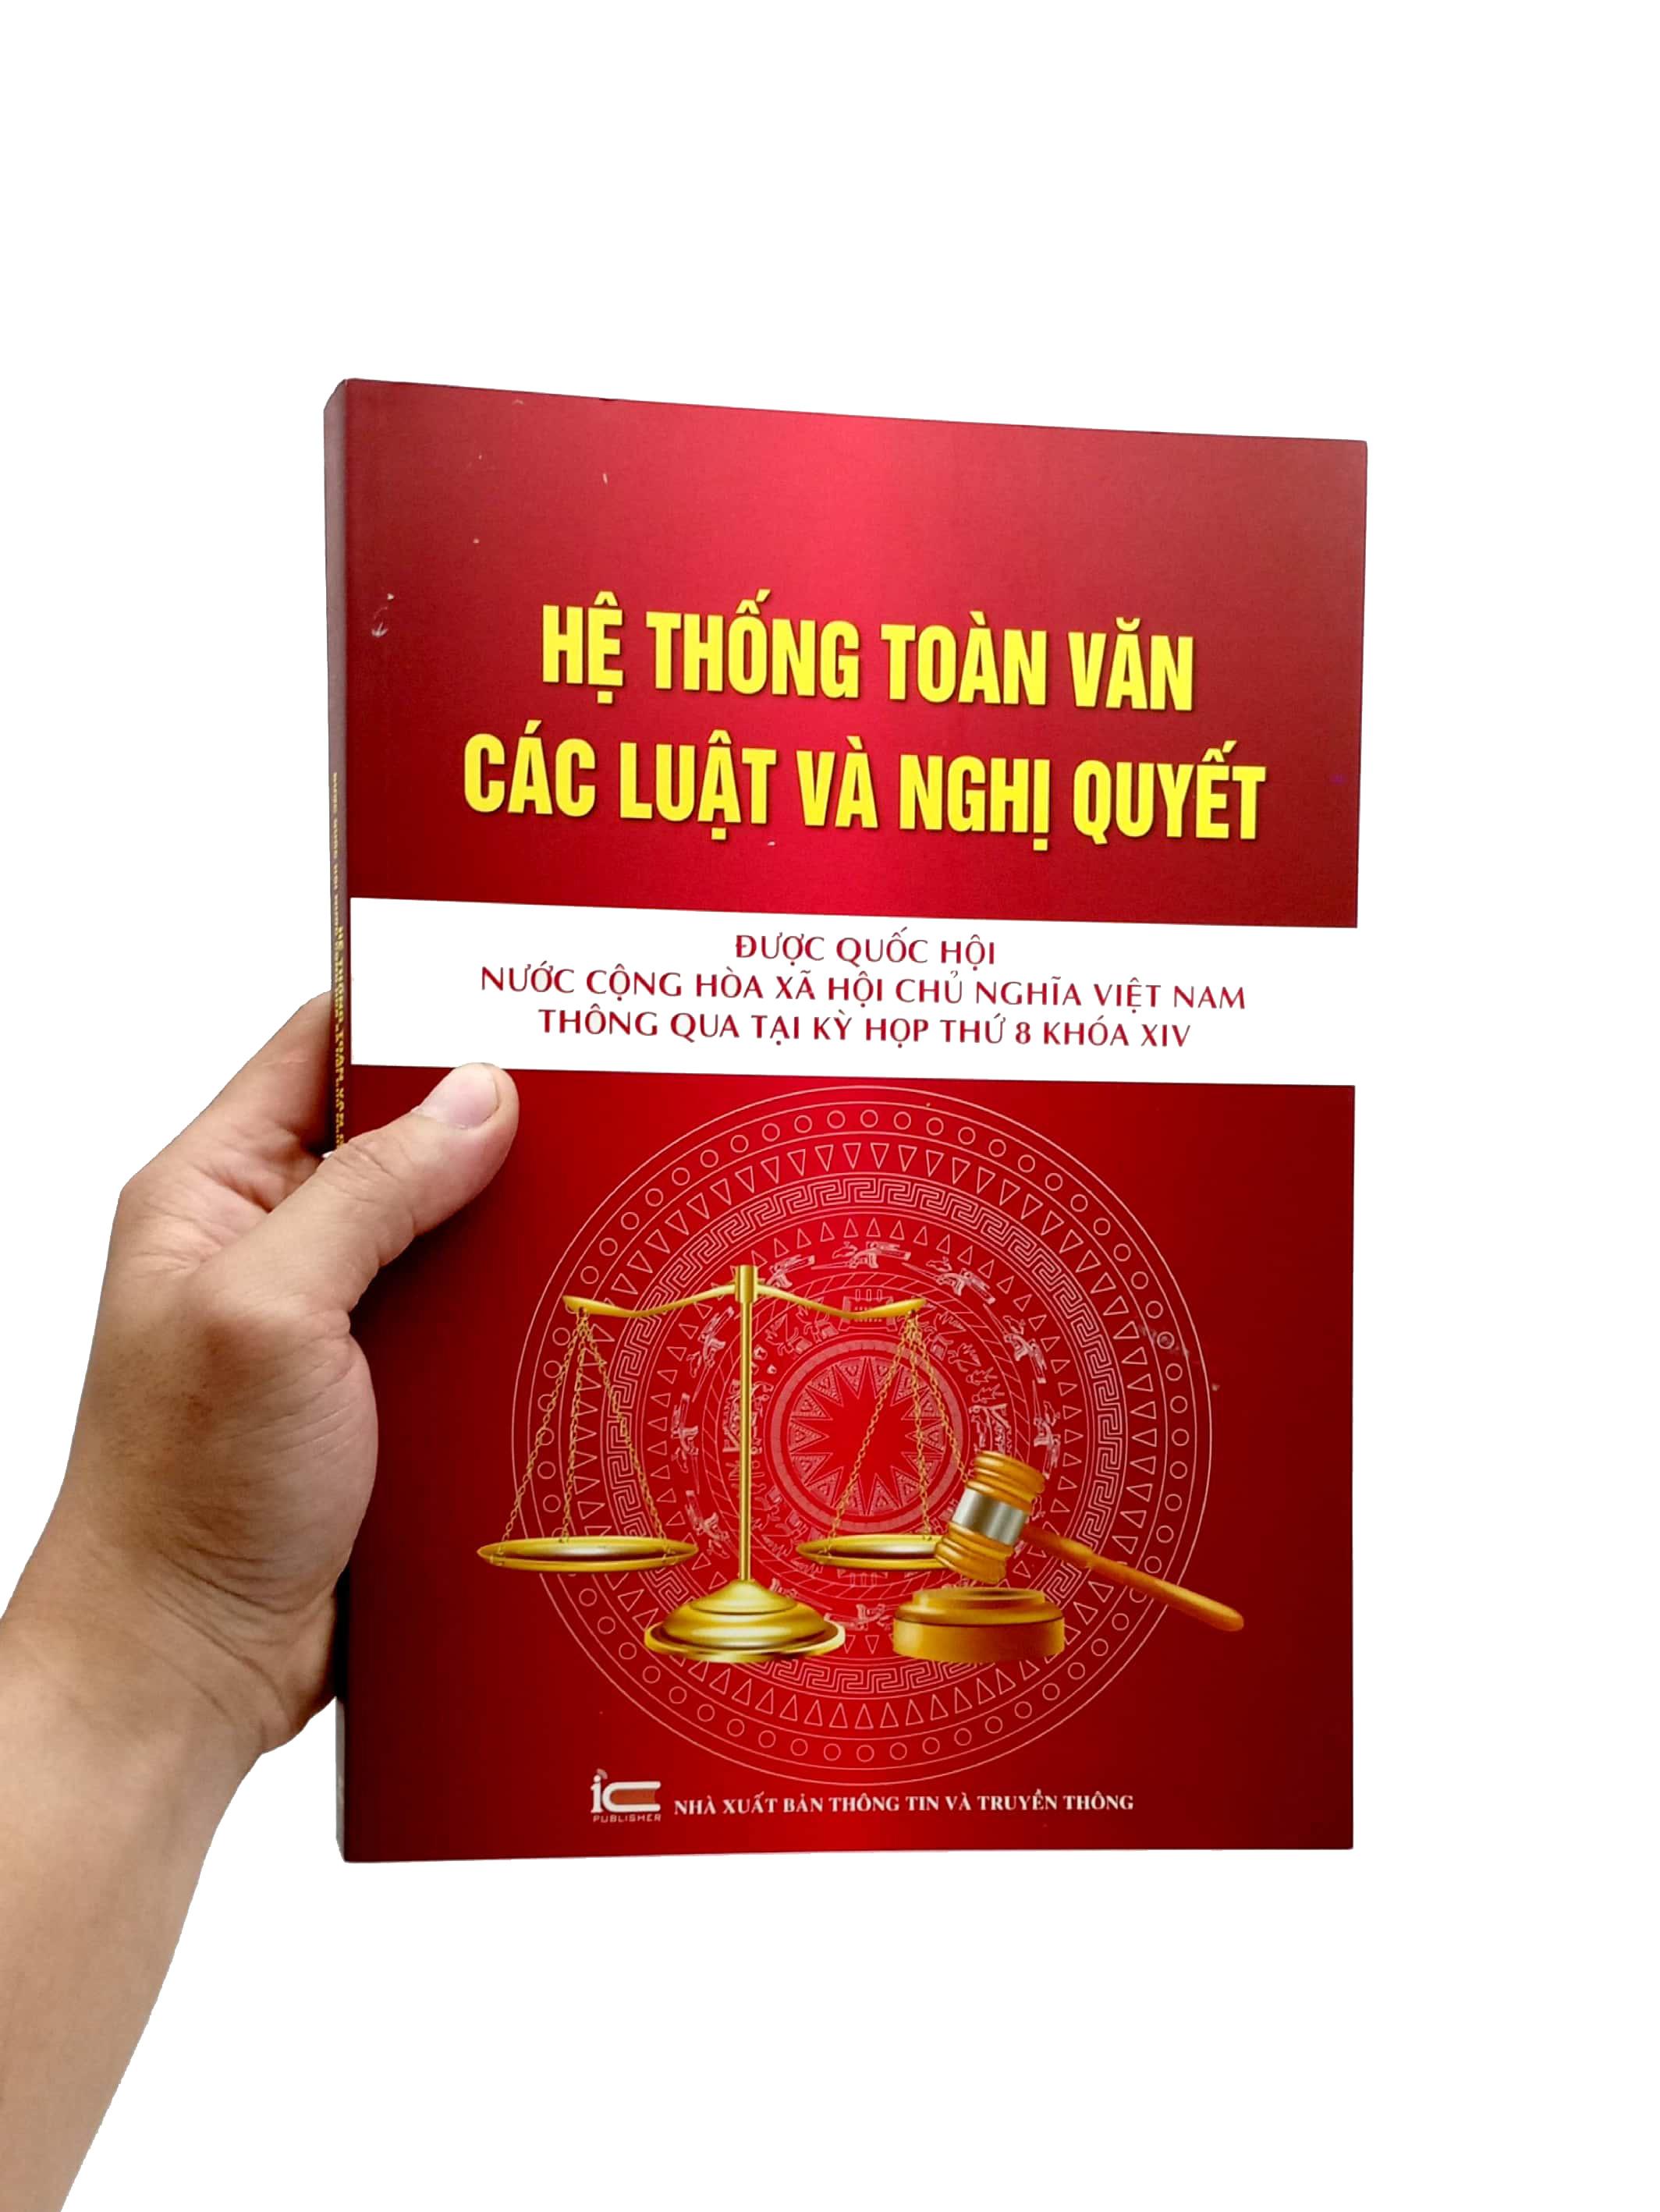 Hệ Thống Toàn Văn Các Luật Và Các Nghị Quyết Được Quốc Hội Nước Cộng Hòa Xã Hội Chủ Nghĩa Việt Nam Thông Quan Tại Kỳ Họp Thứ 8 Khóa XIV